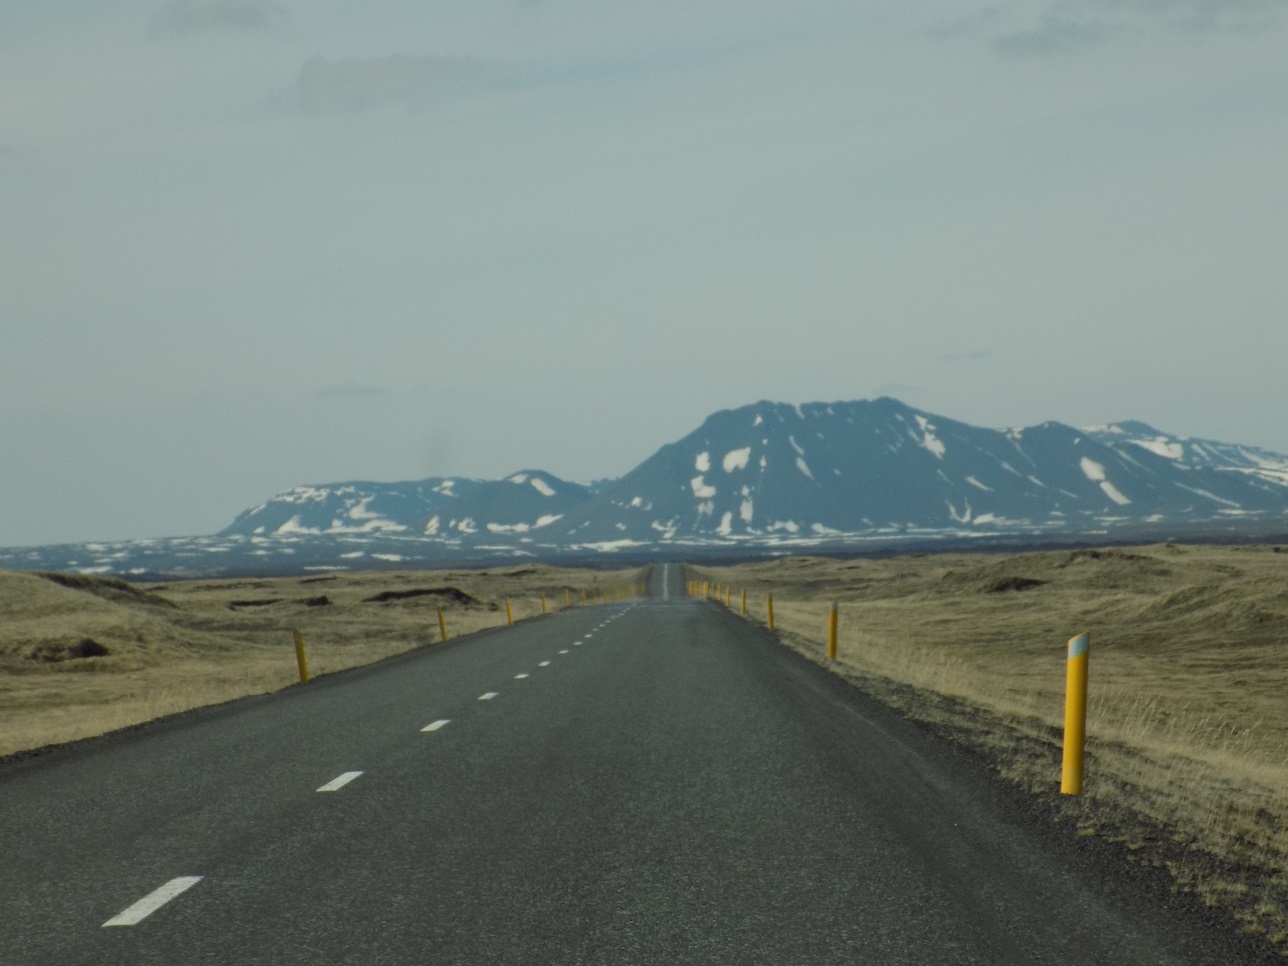 On the way to Akureyri